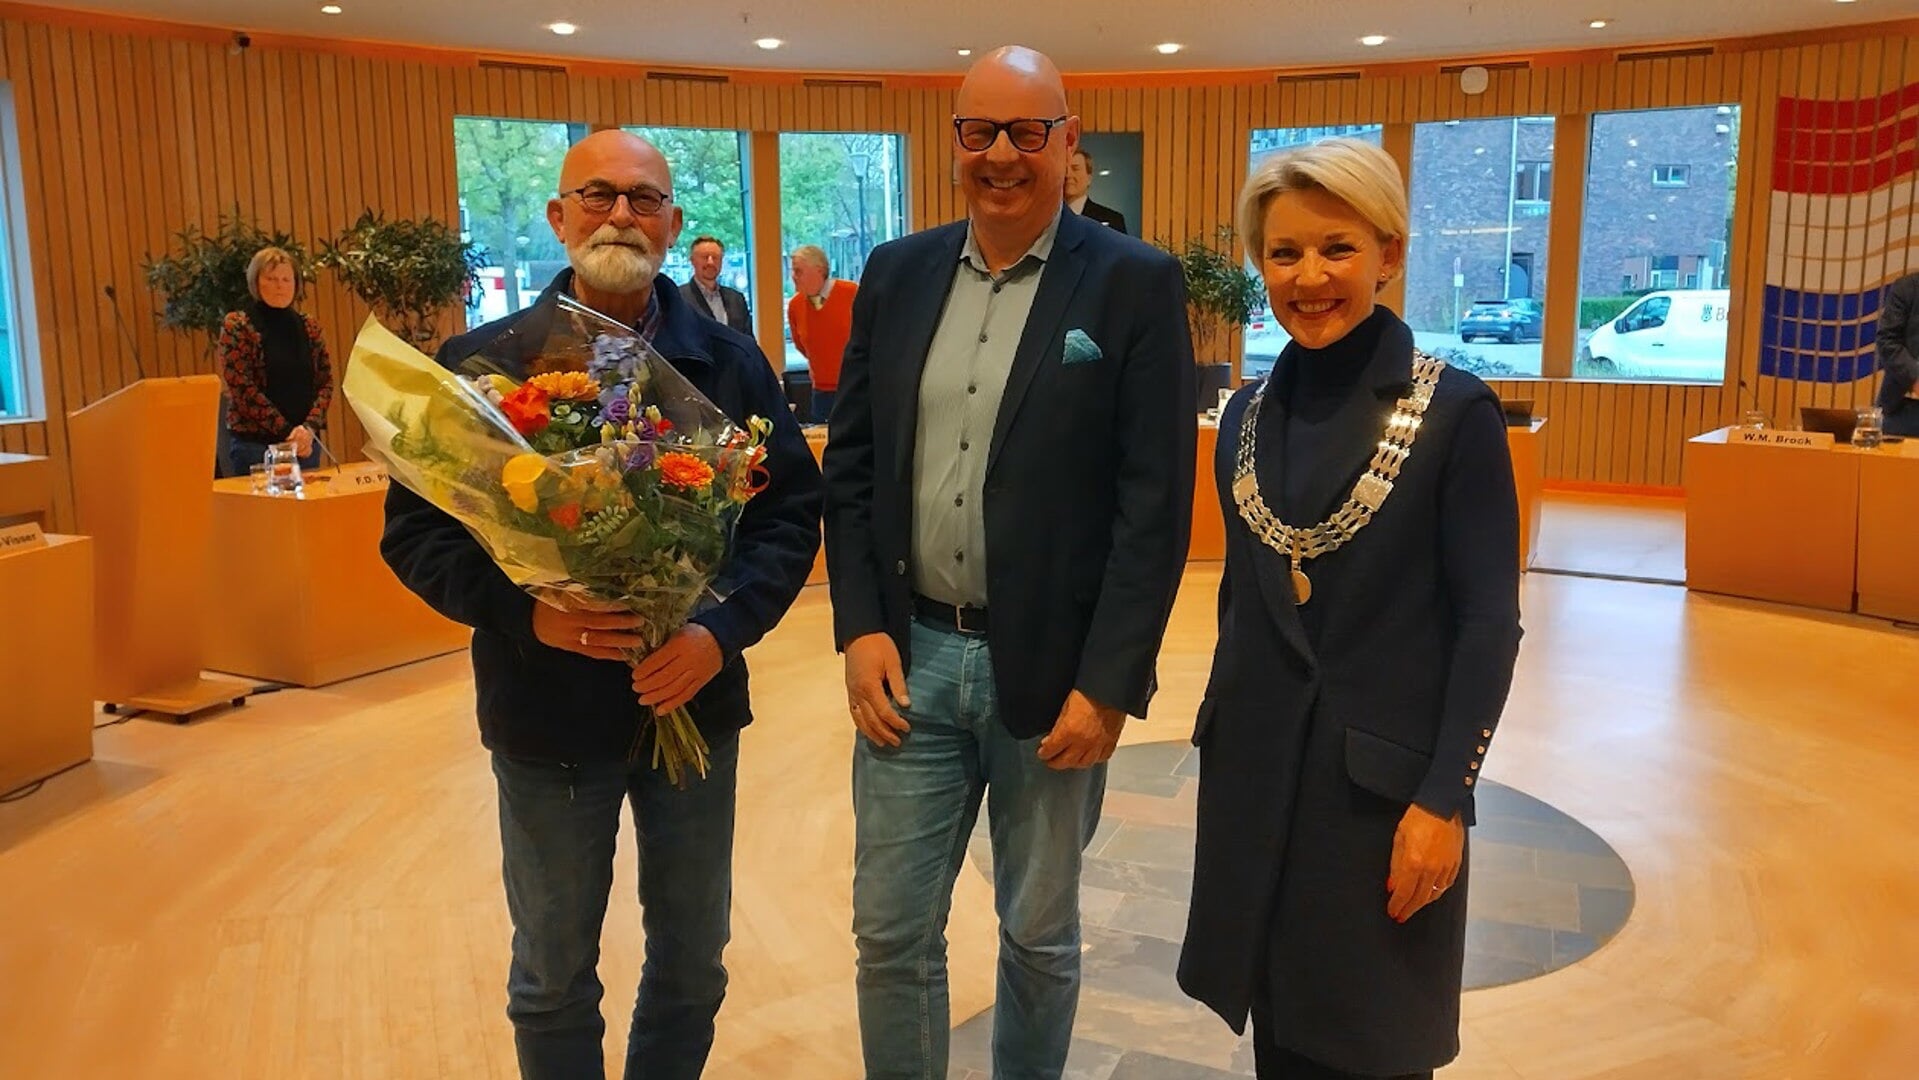 Dhr Balth de Winter, met in het midden Steven Verhaar als voorzitter van de werkgeverscommissie en burgemeester Iris Meerts